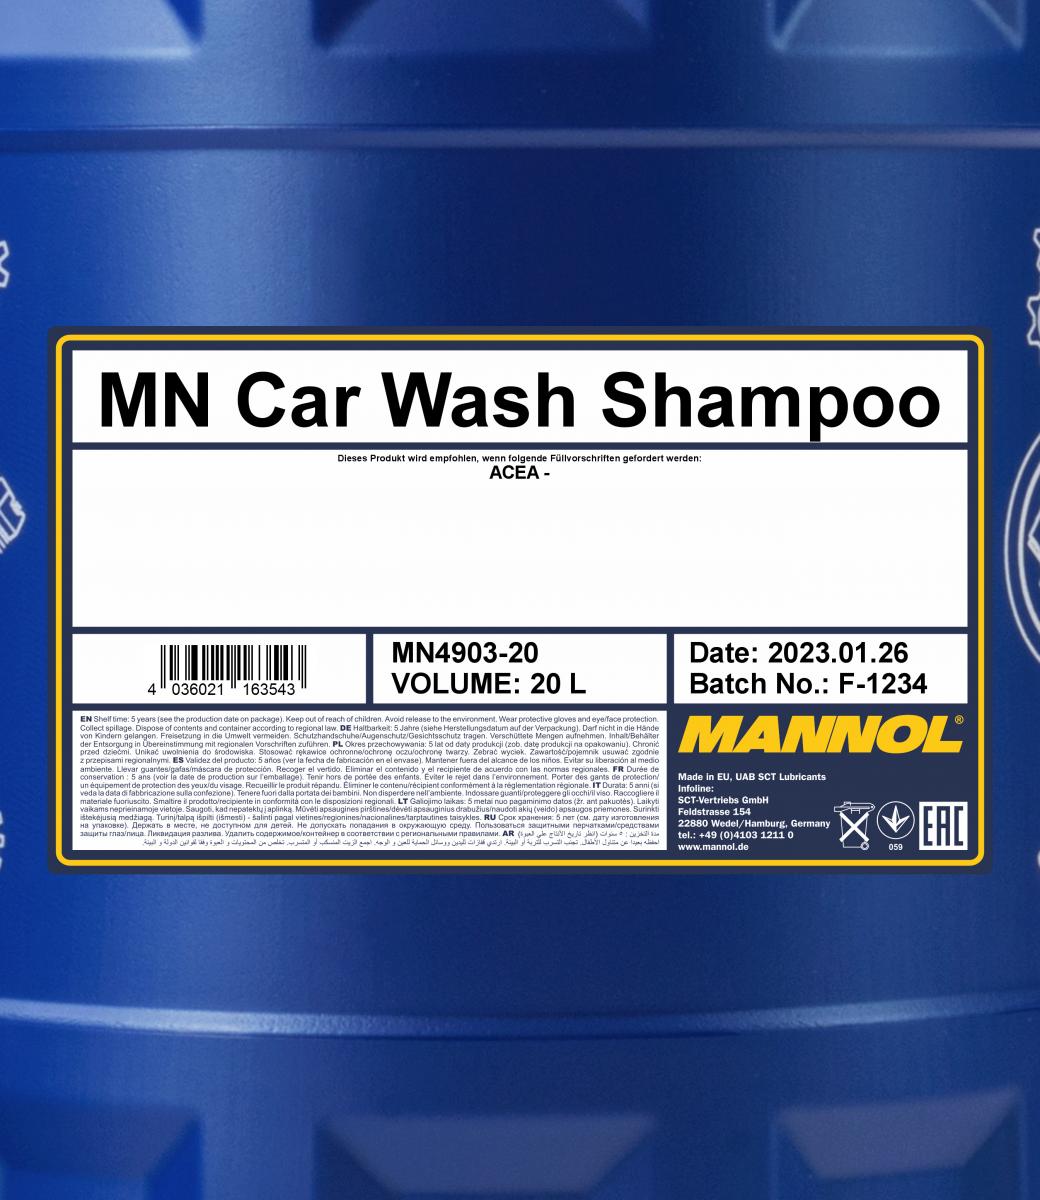 MN Car Wash Shampoo